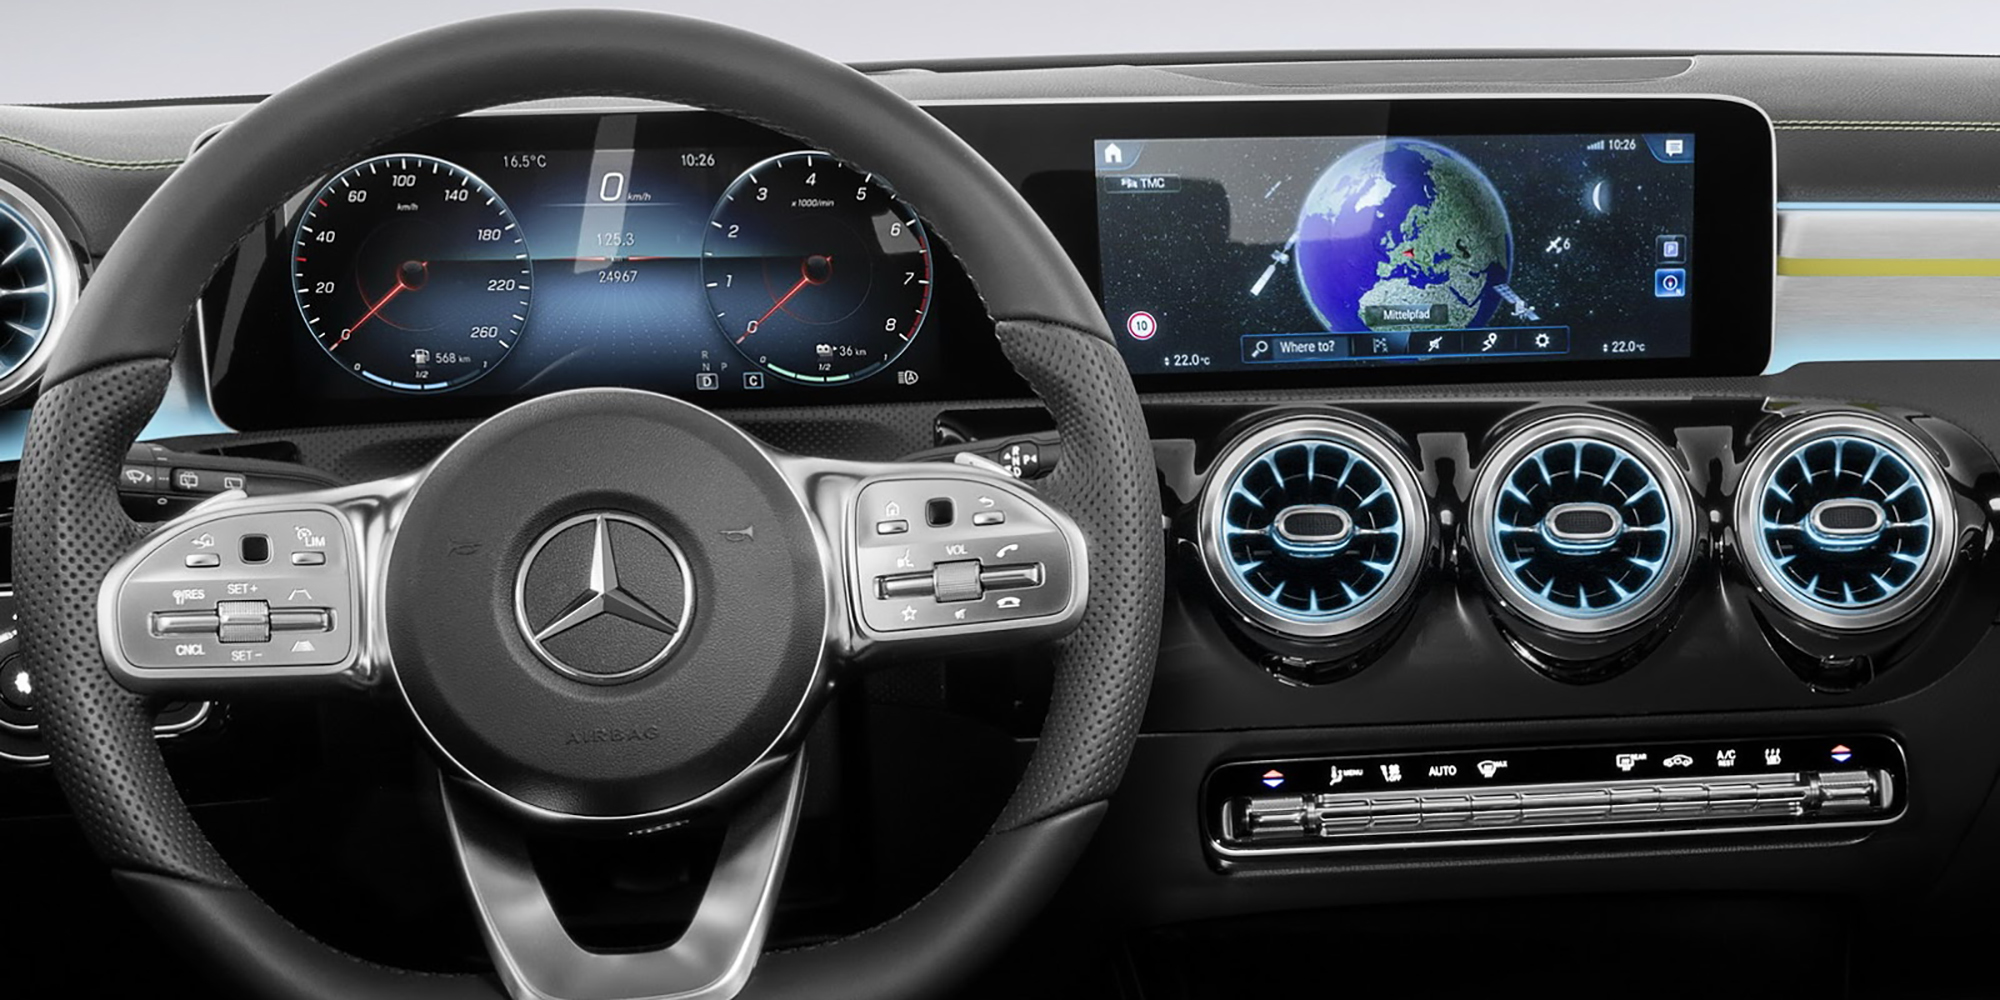 2018 Mercedes-Benz A-Class interior revealed - Photos (1 